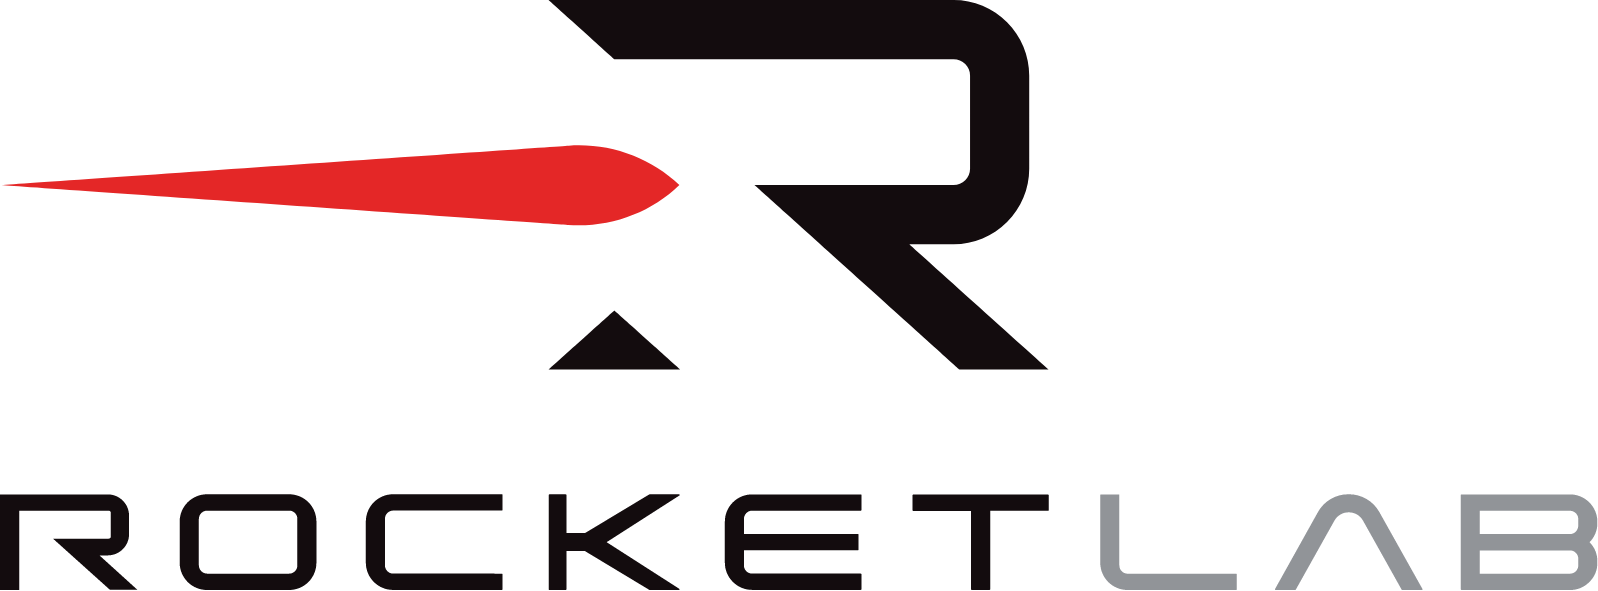 Rocket Lab logo large (transparent PNG)